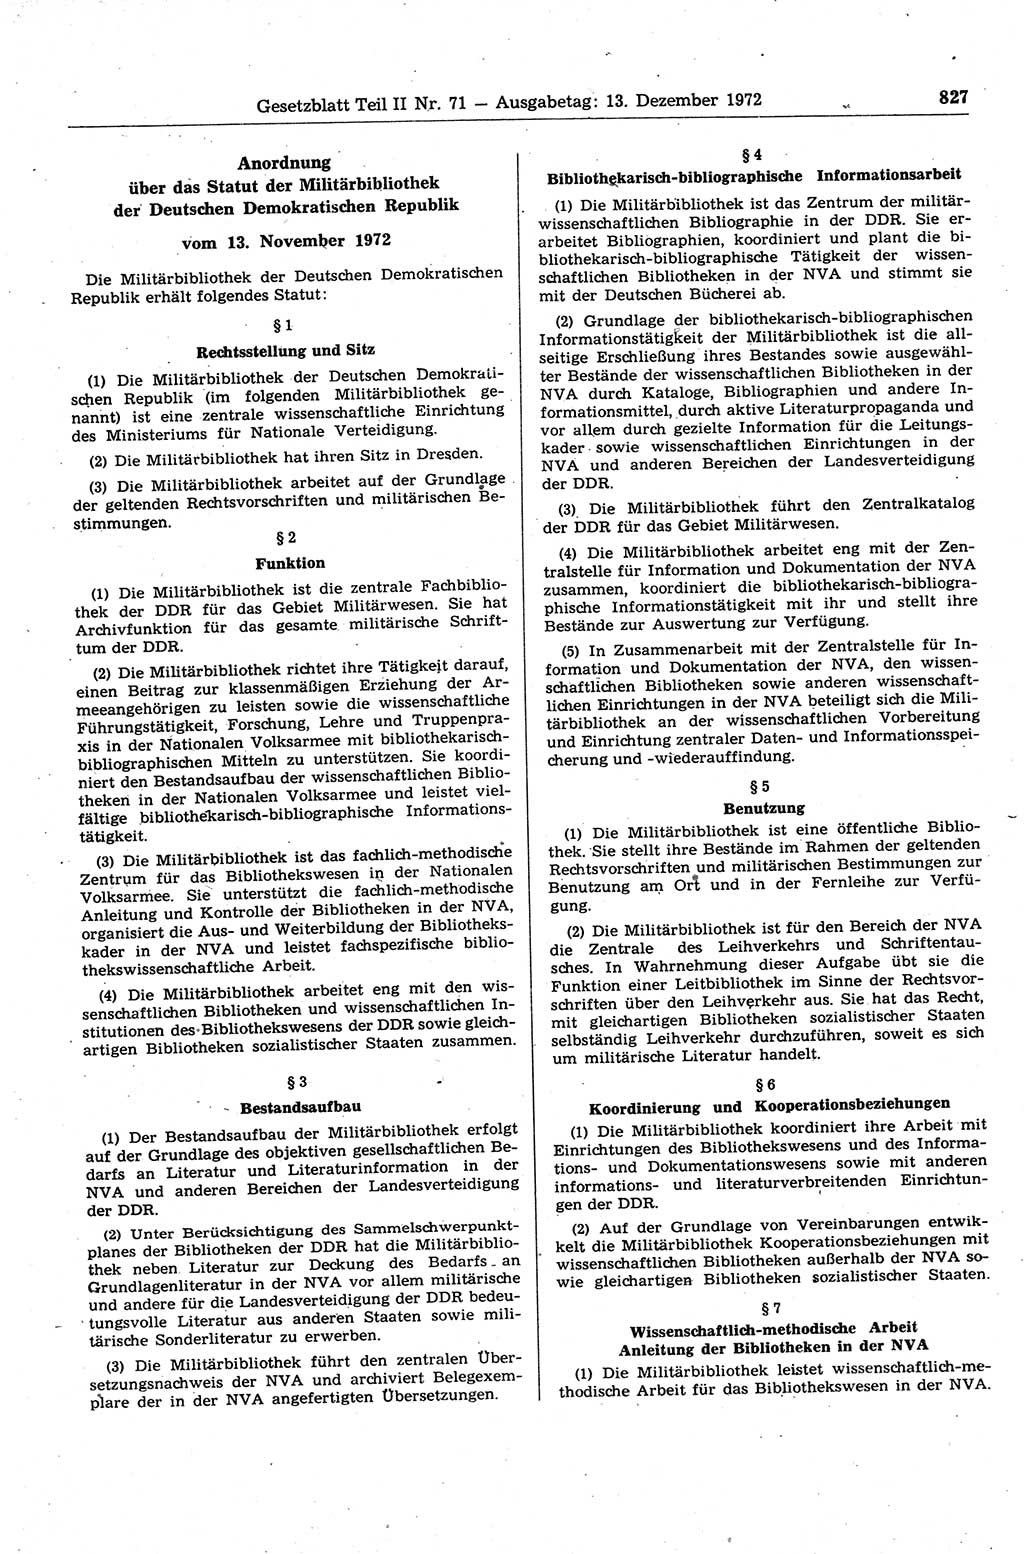 Gesetzblatt (GBl.) der Deutschen Demokratischen Republik (DDR) Teil ⅠⅠ 1972, Seite 827 (GBl. DDR ⅠⅠ 1972, S. 827)